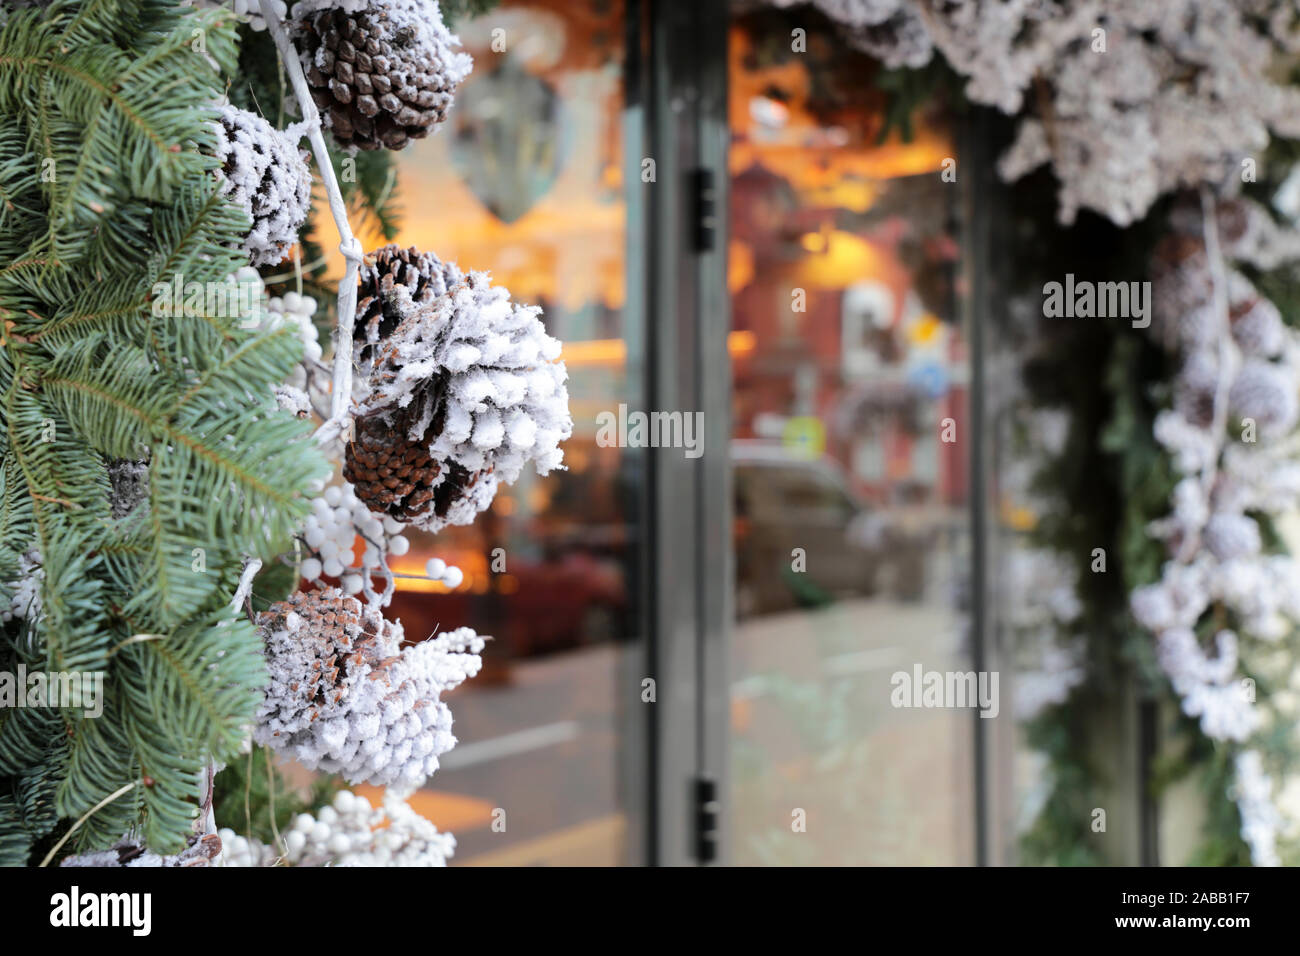 Décorations de Noël dans une vitrine sur une rue de la ville. Branches de sapin et des pommes de pin en hiver, fête du Nouvel An, la magie de la maison de vacances Banque D'Images